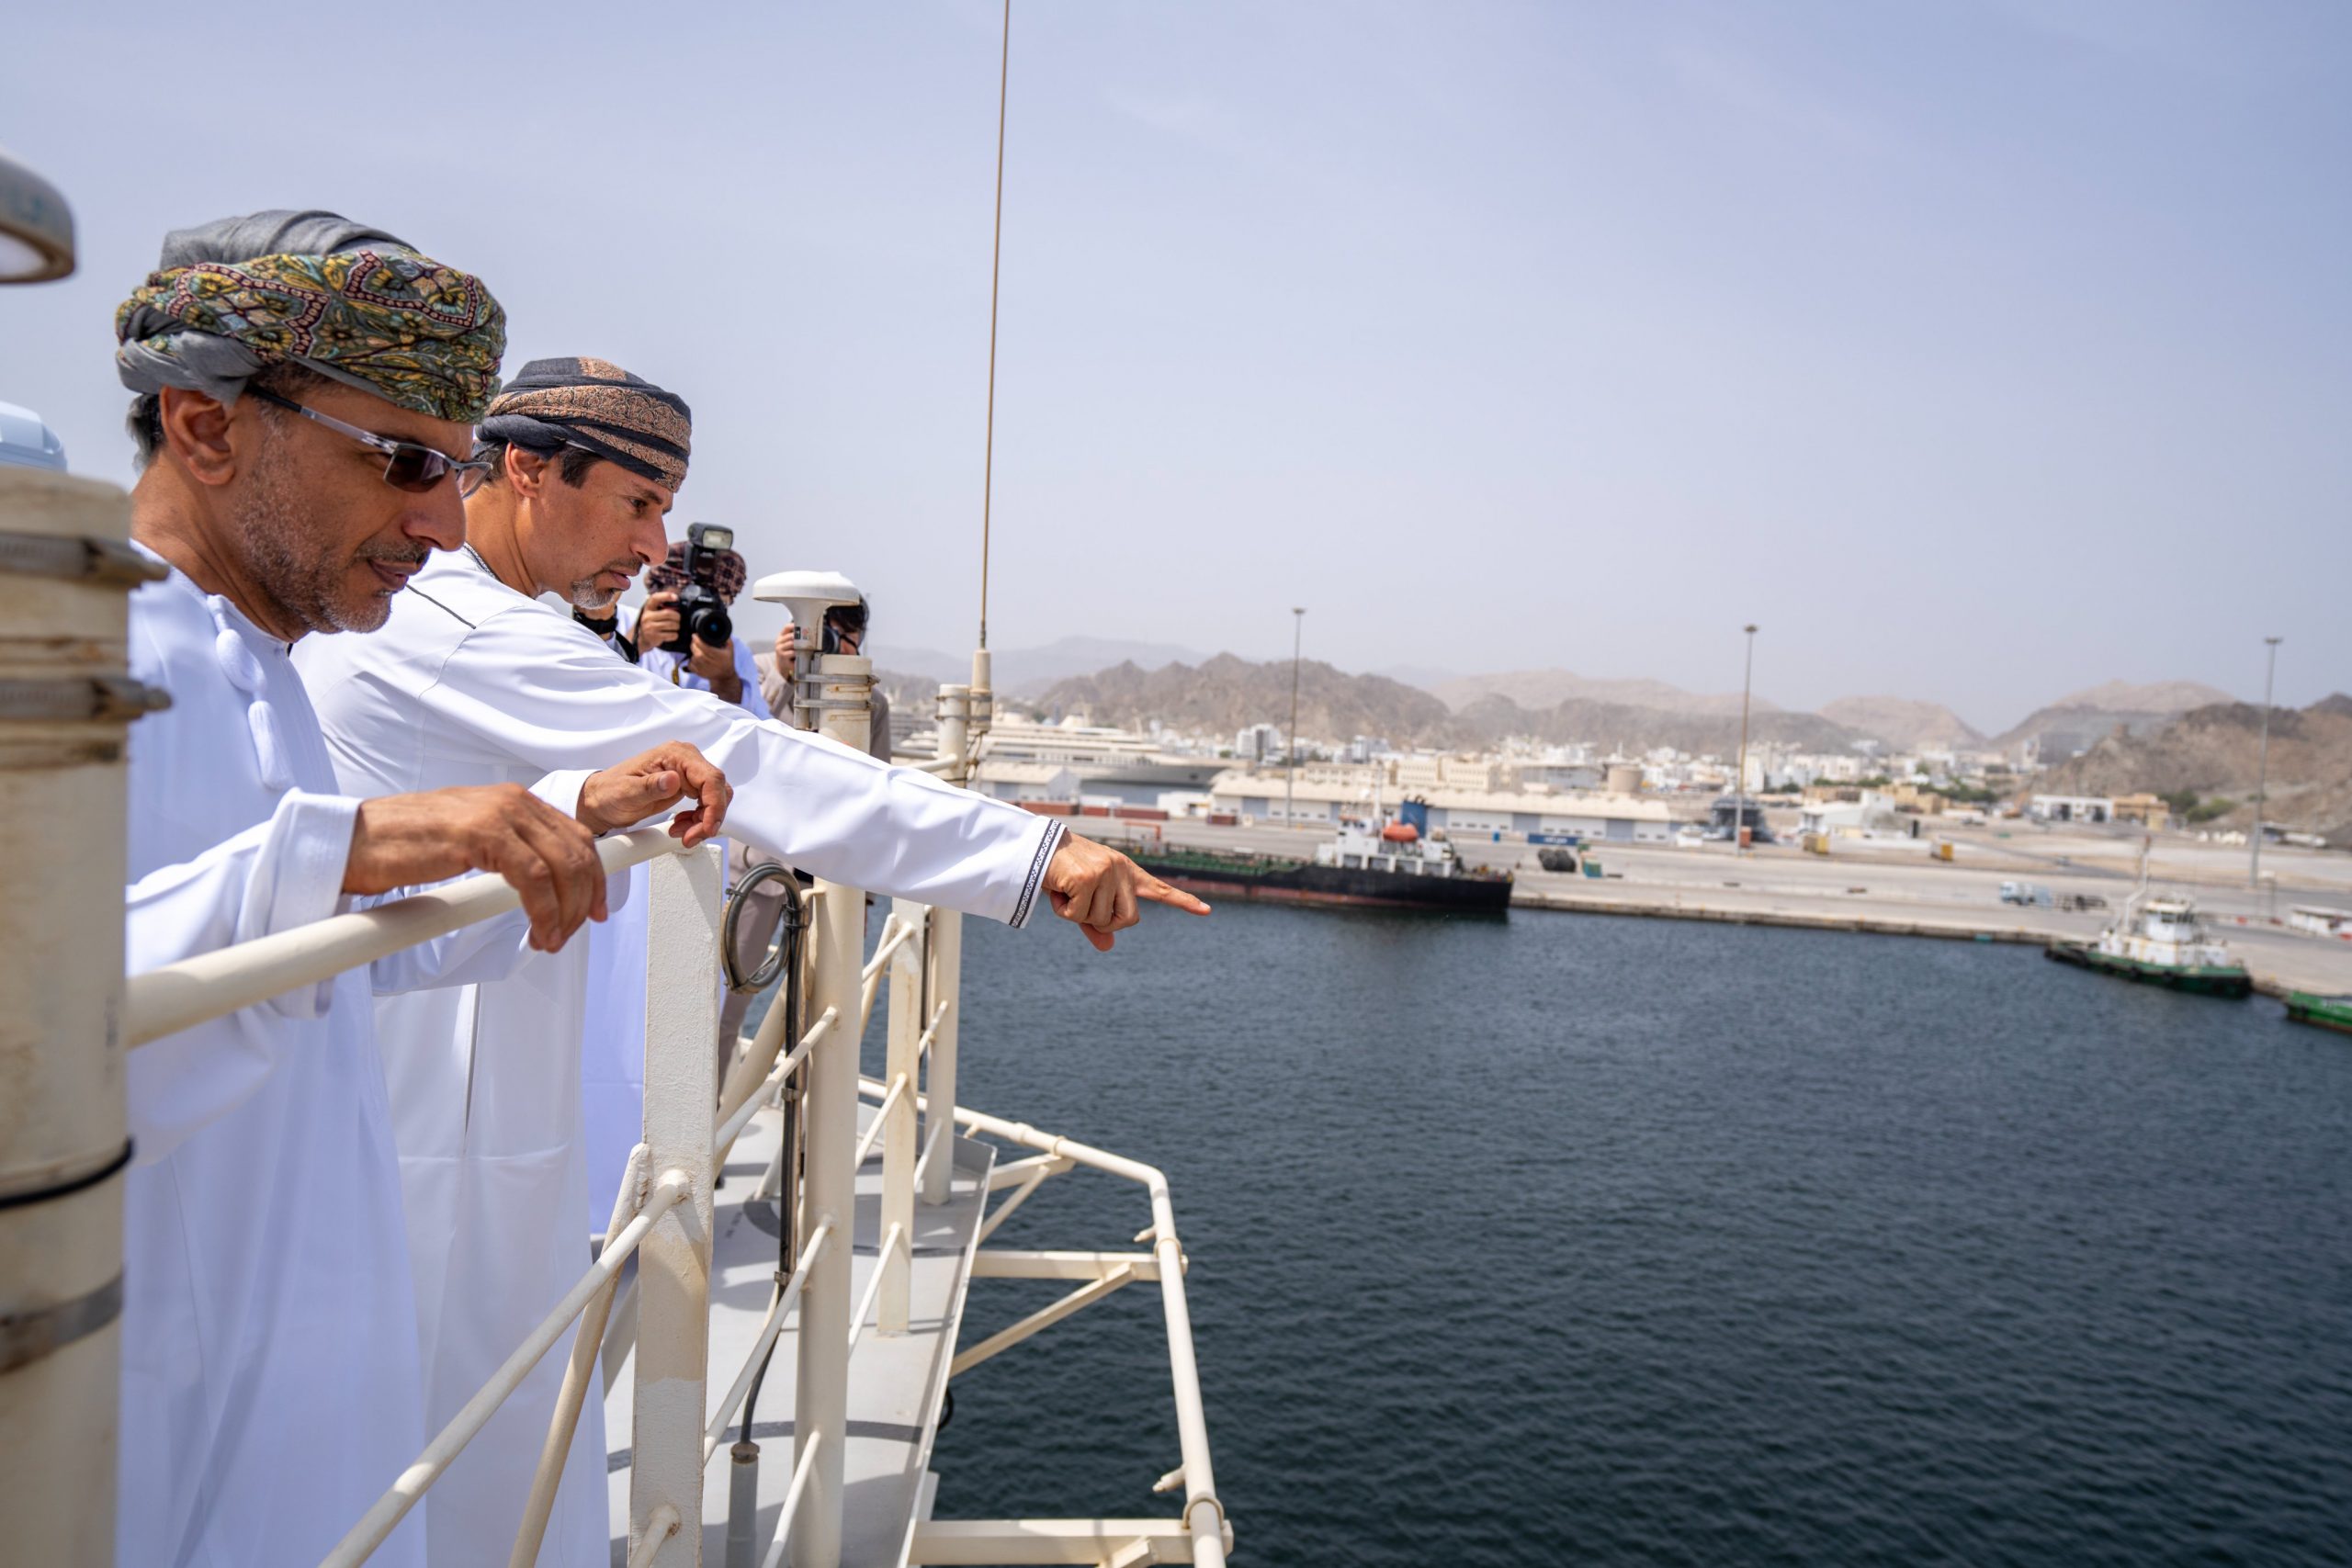 العوفي يتفقّد أول ناقلة بحرية في العالم لنقل الهيدروجين المسال- الصورة من وزارة الطاقة والمعادن بسلطنة عمان